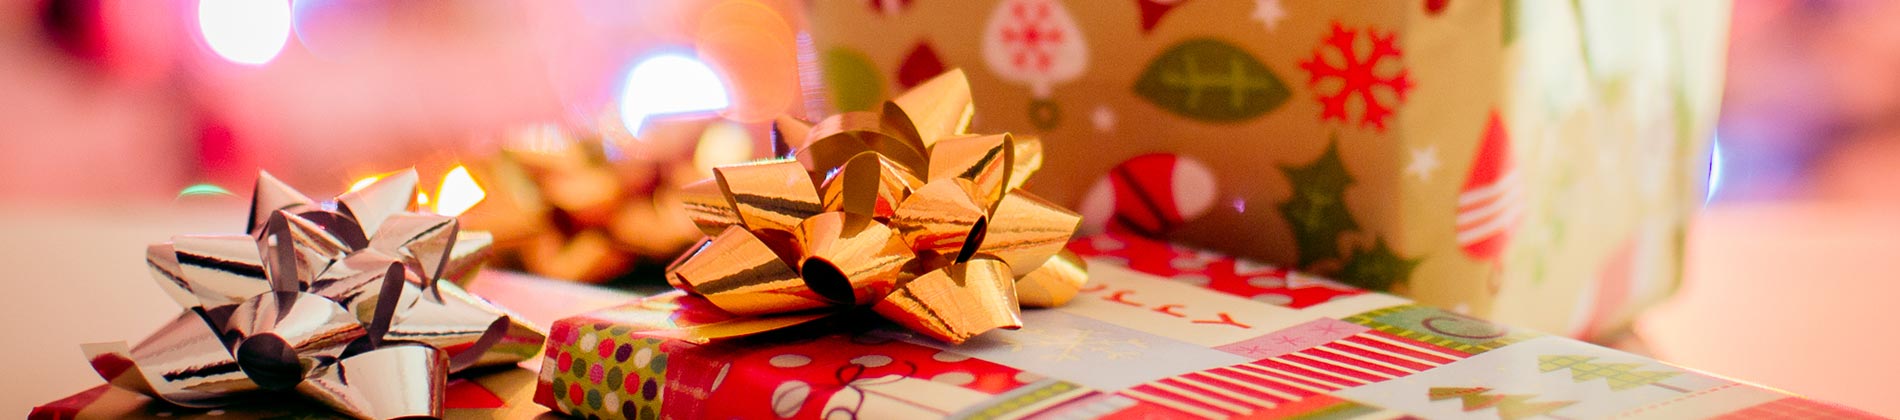 Undgå at købe gaver til dig selv i julen